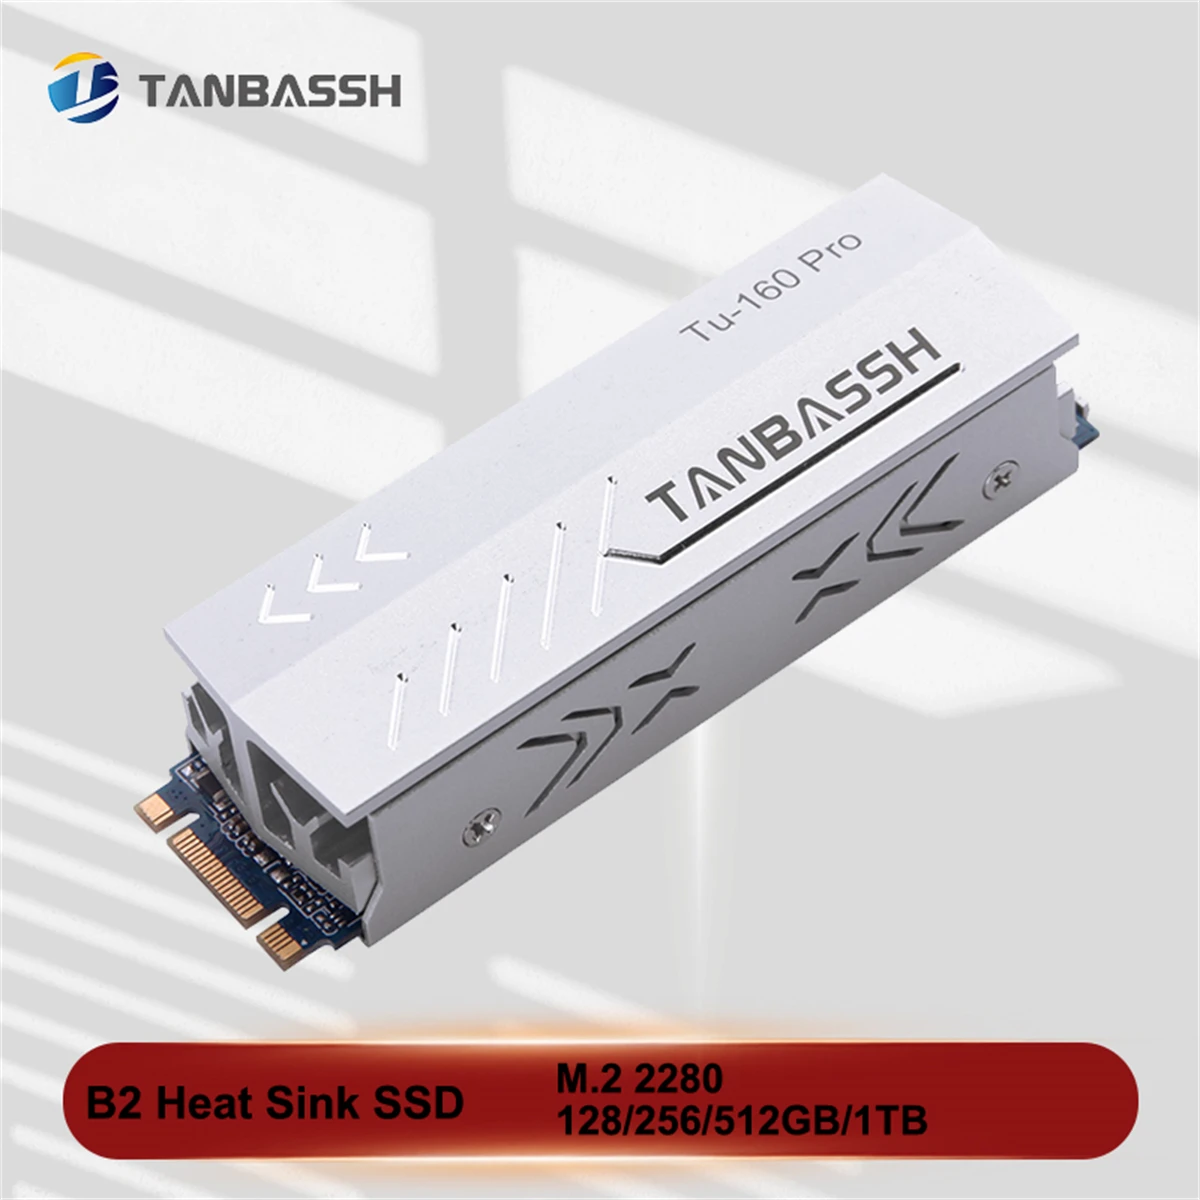 

Радиатор TANBASSH TU160, твердотельный жесткий диск M.2, 2280 дюйма, 128 ГБ, 256 ГБ, 512 ГБ, ТБ, Sata3 протокол SSD для настольного компьютера, ноутбука